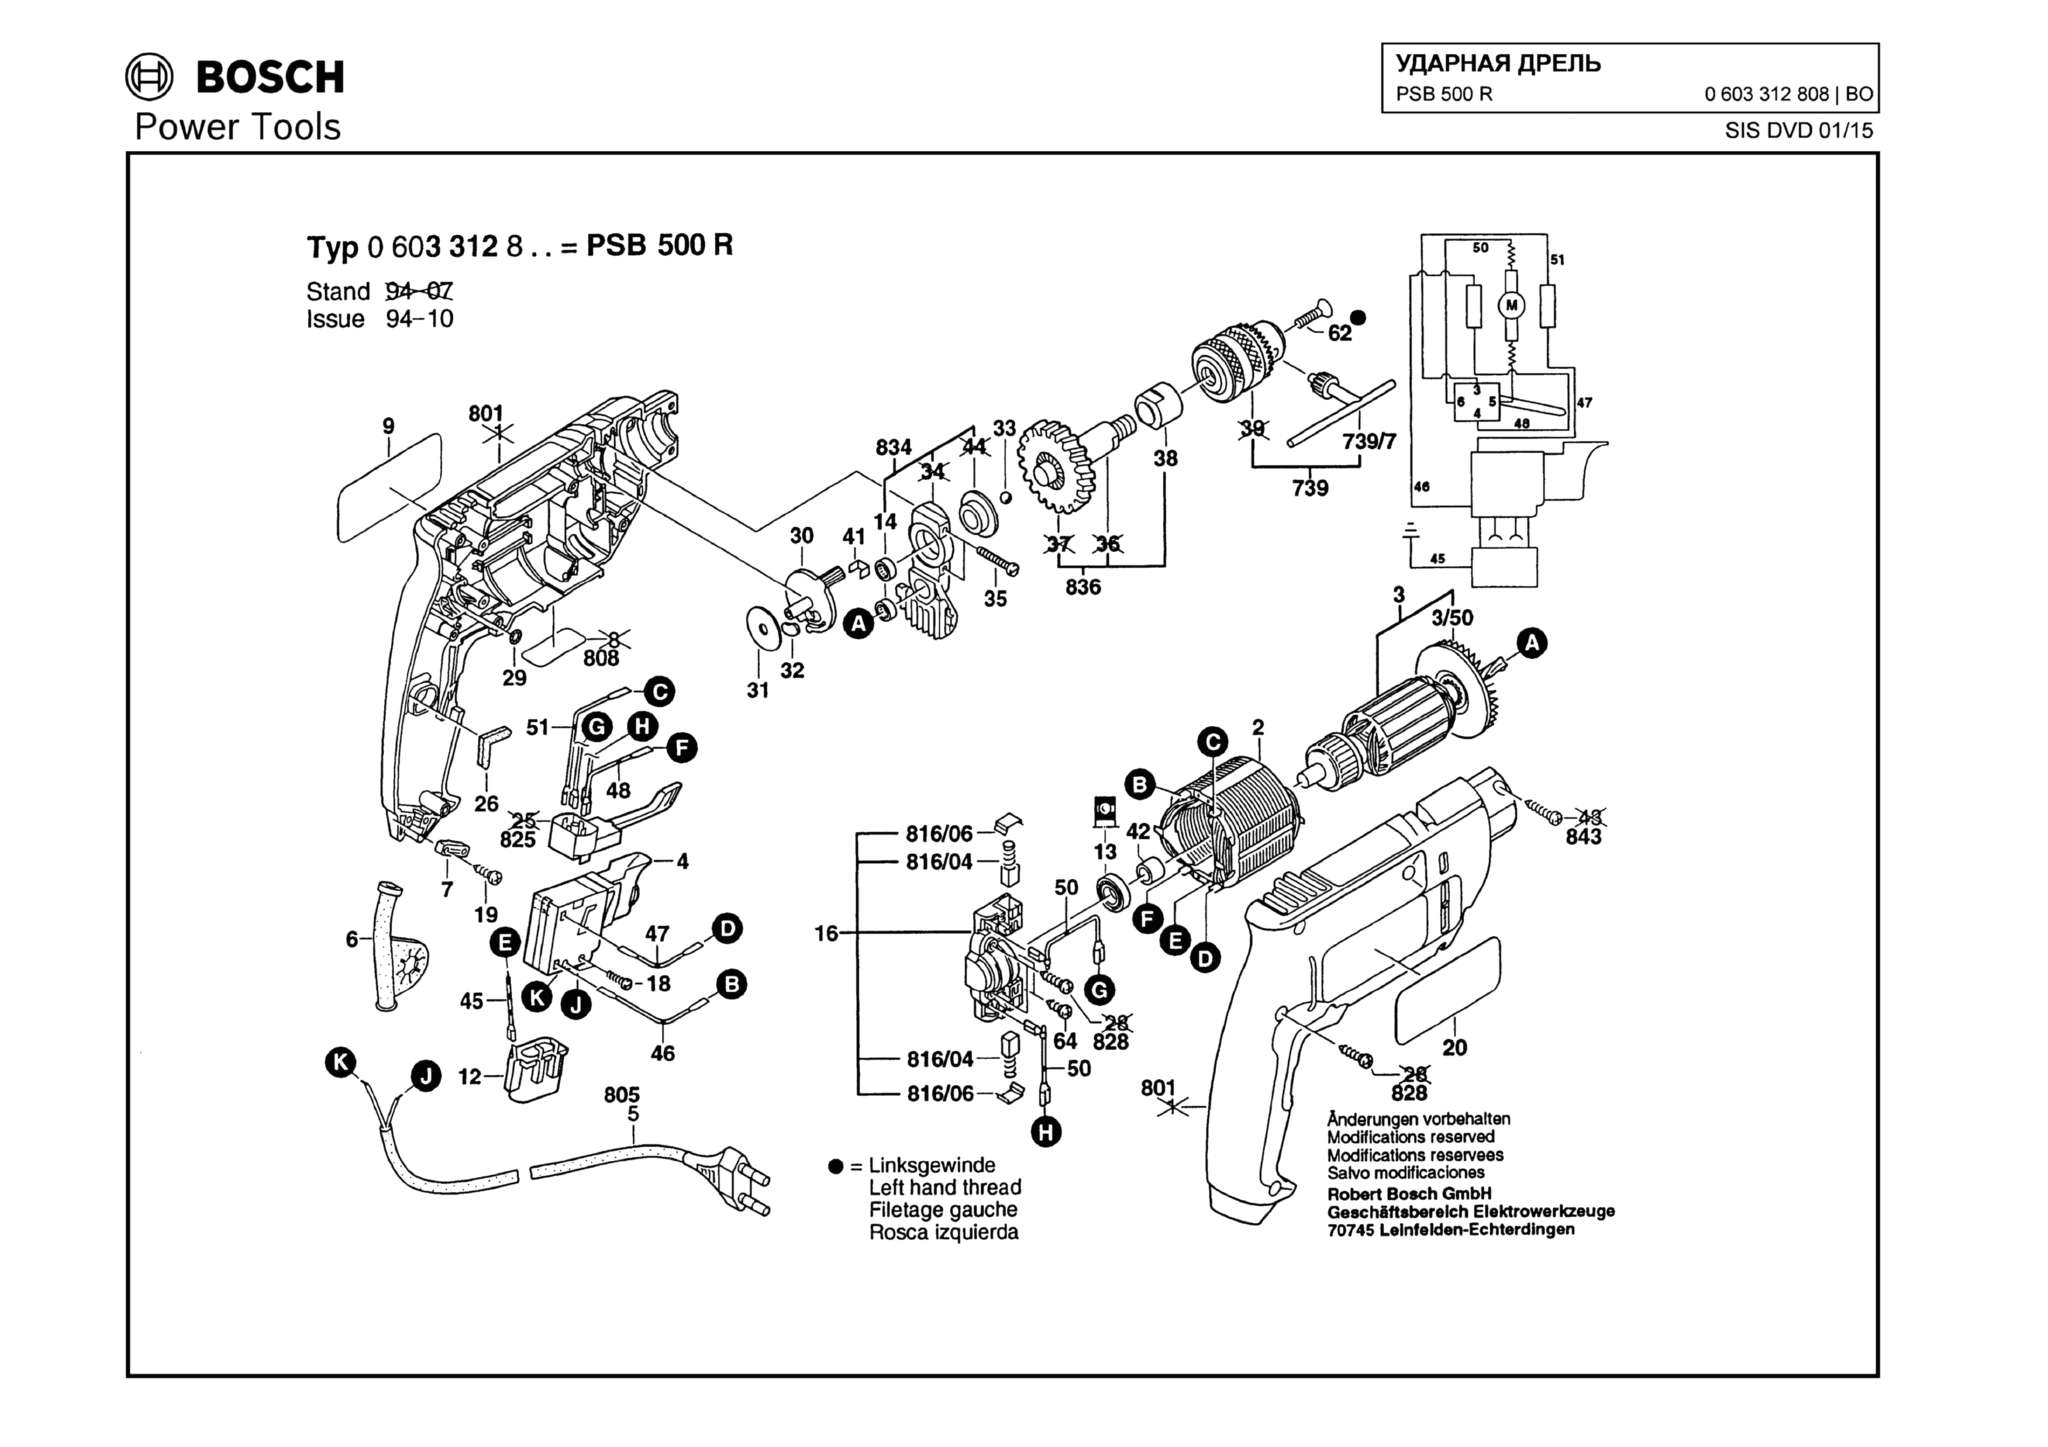 Запчасти, схема и деталировка Bosch PSB 500 R (ТИП 0603312808)